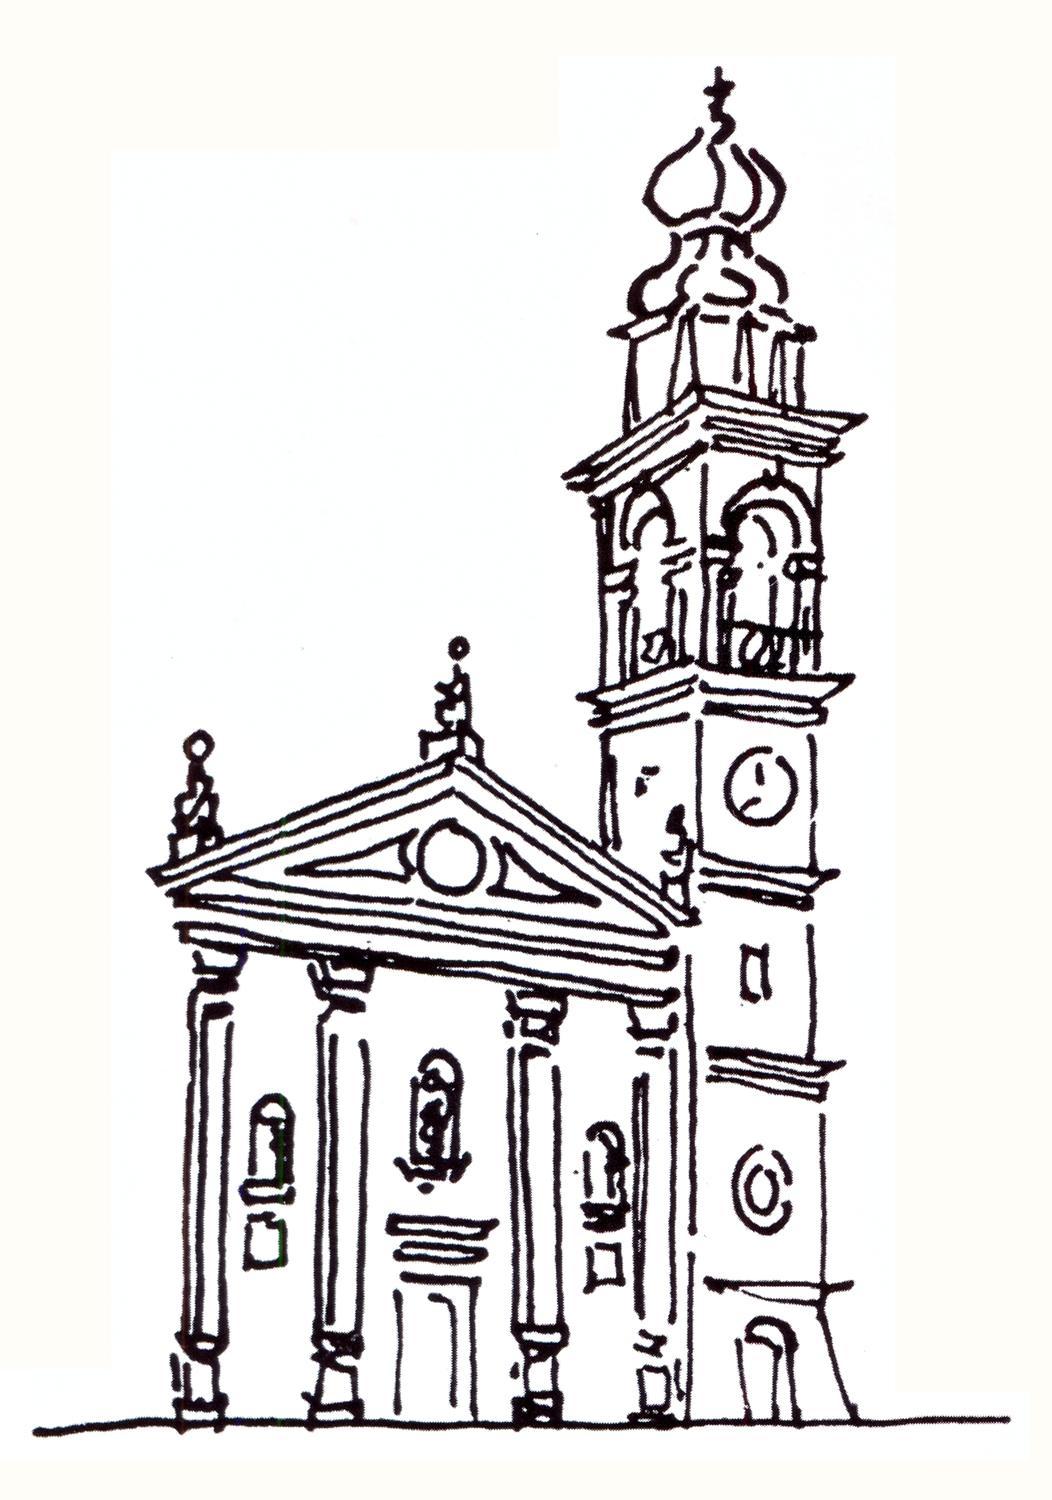 La vecchia parrocchiale di S. Giacomo in Battaglia Terme in un disegno di Milvia Bellinello Romano.